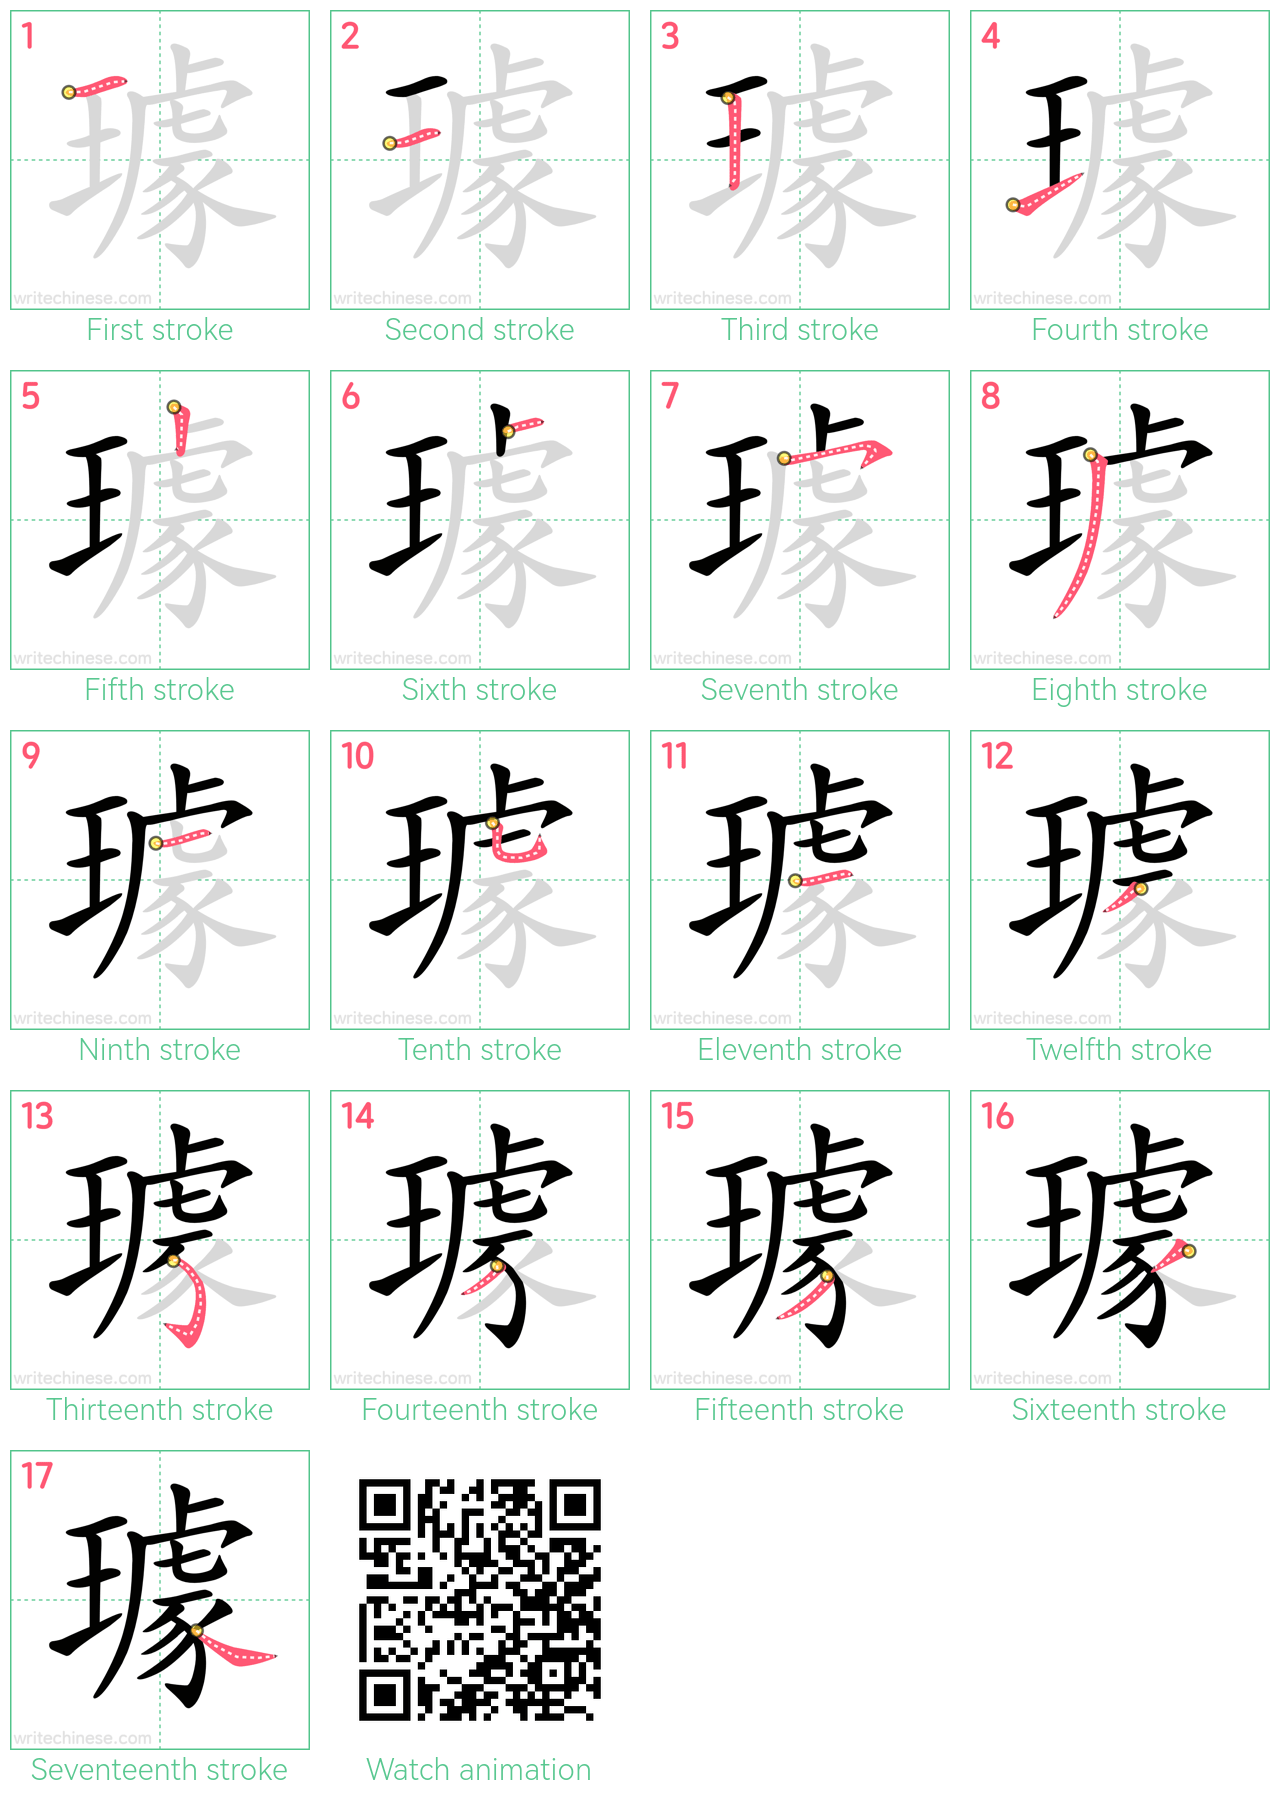 璩 step-by-step stroke order diagrams